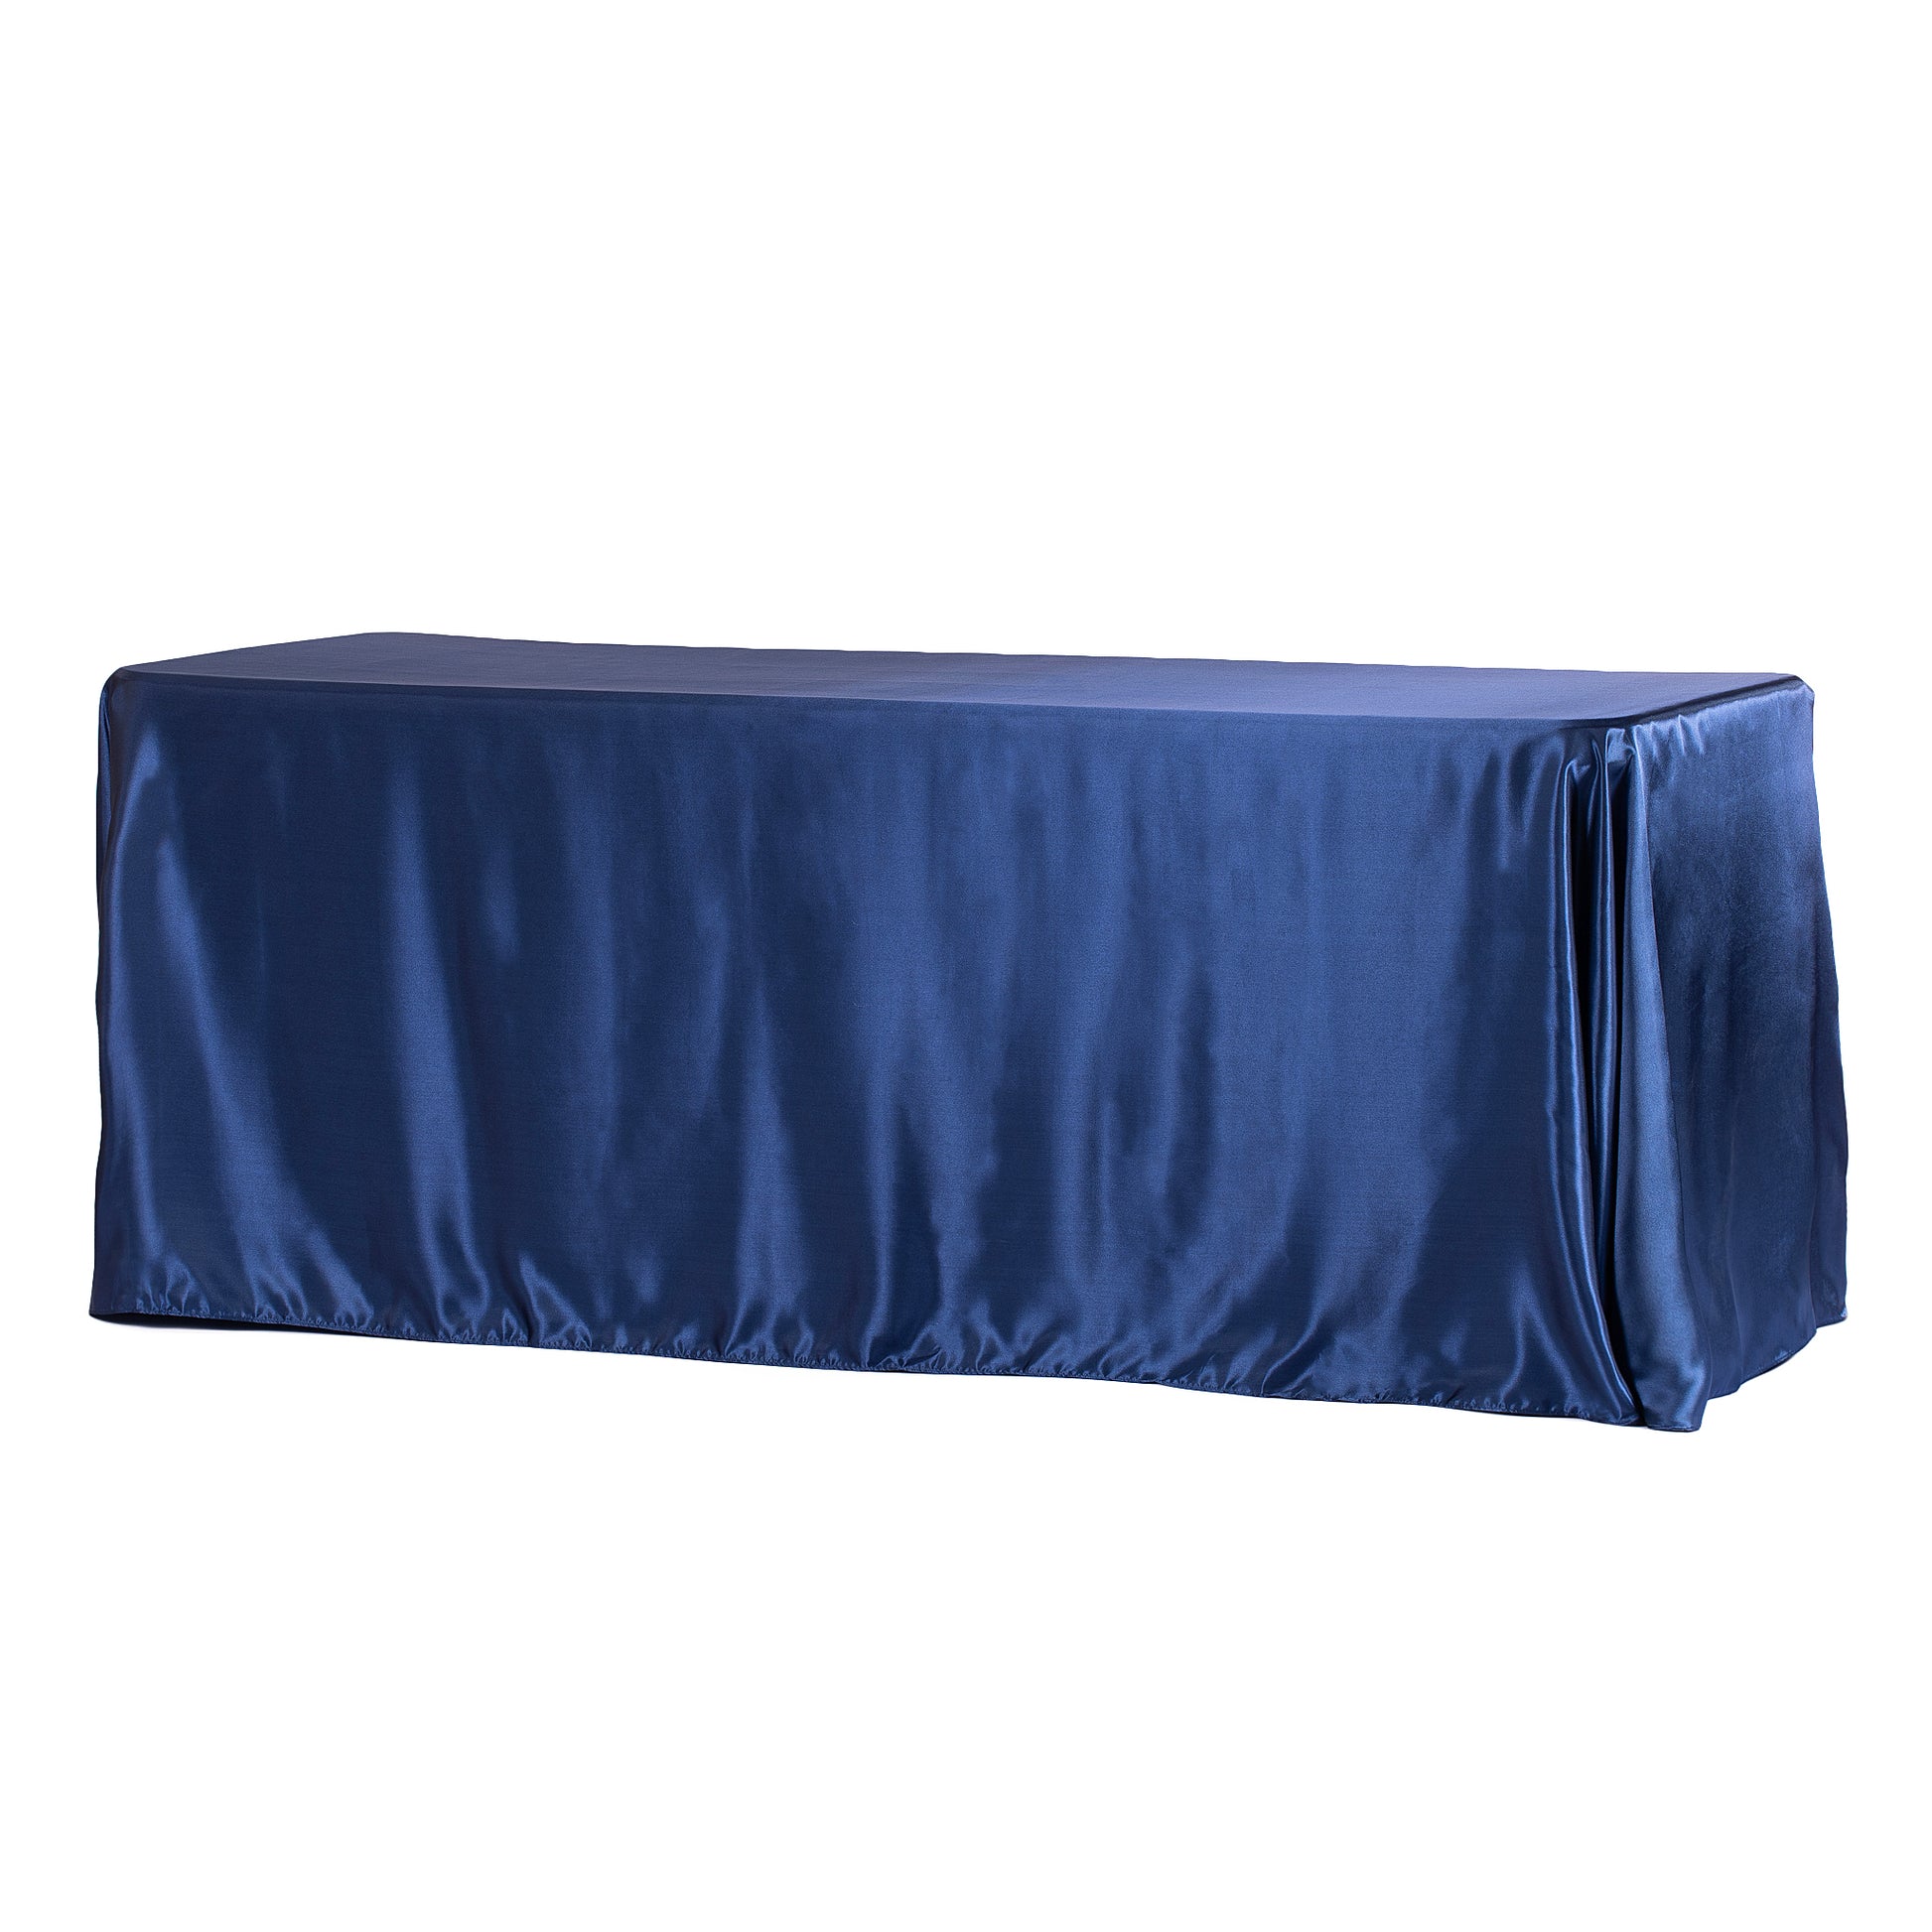 Satin Rectangular 90"x132" Tablecloth - Navy Blue